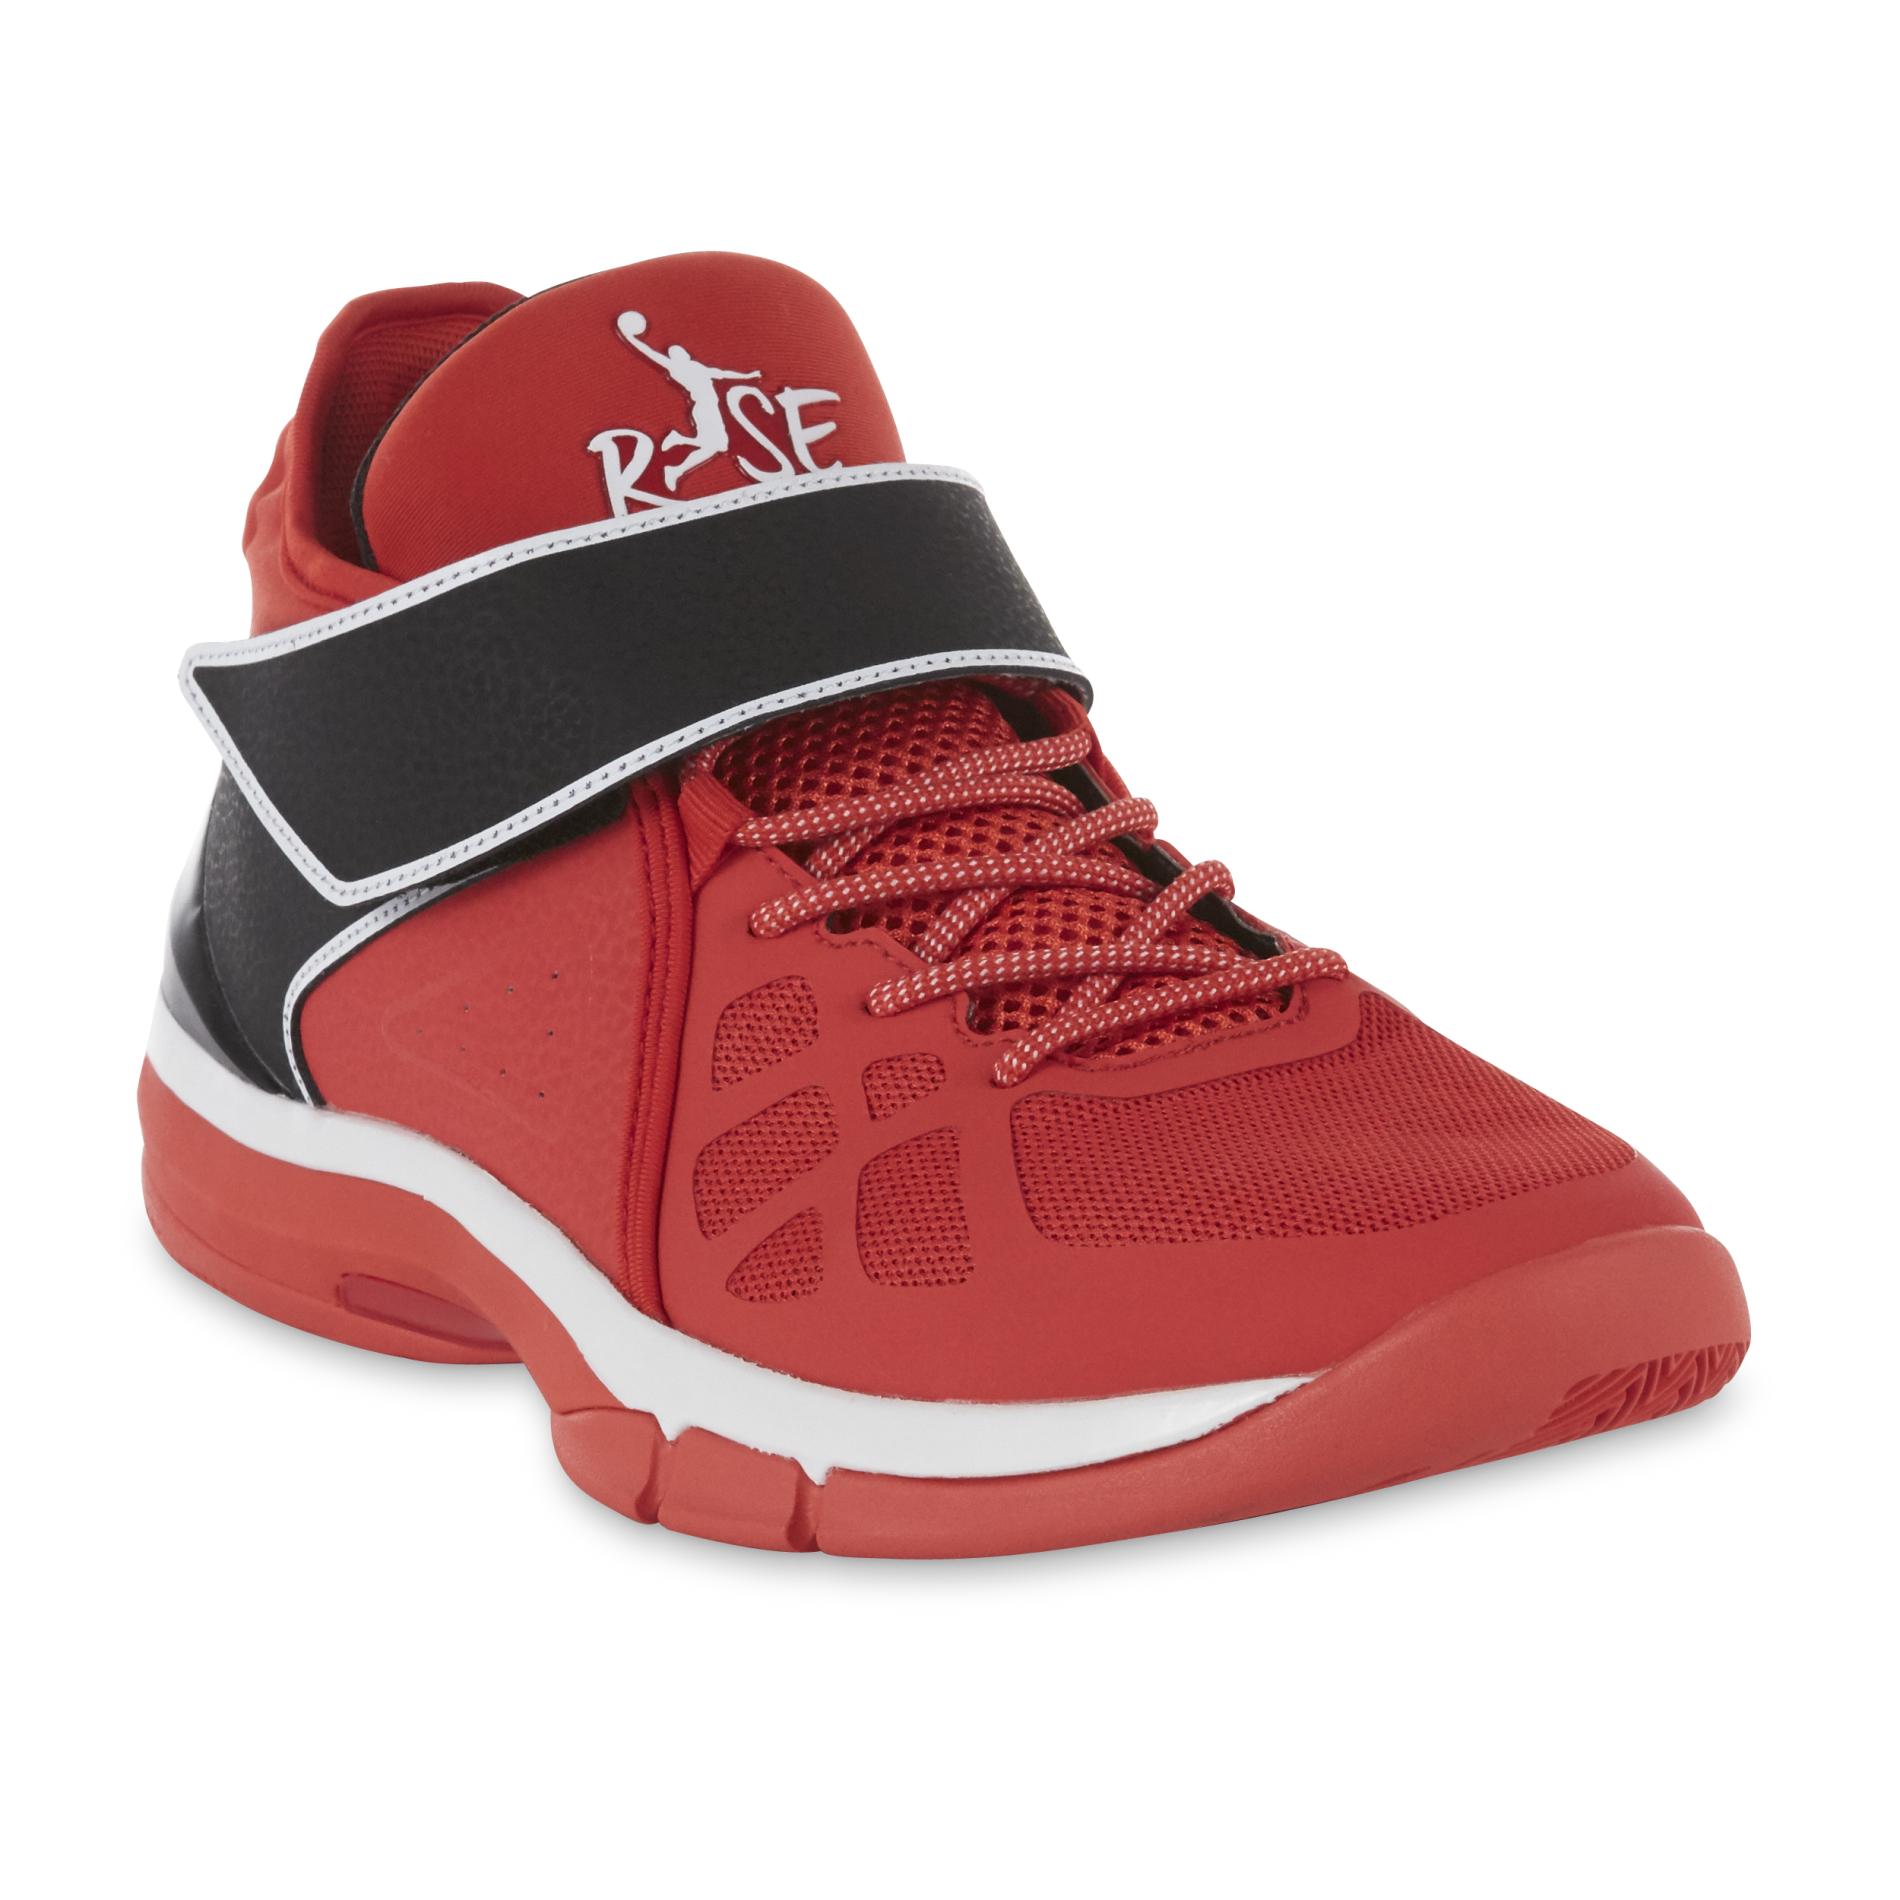 Risewear Men's Swipe Basketball Shoe - Red/Black